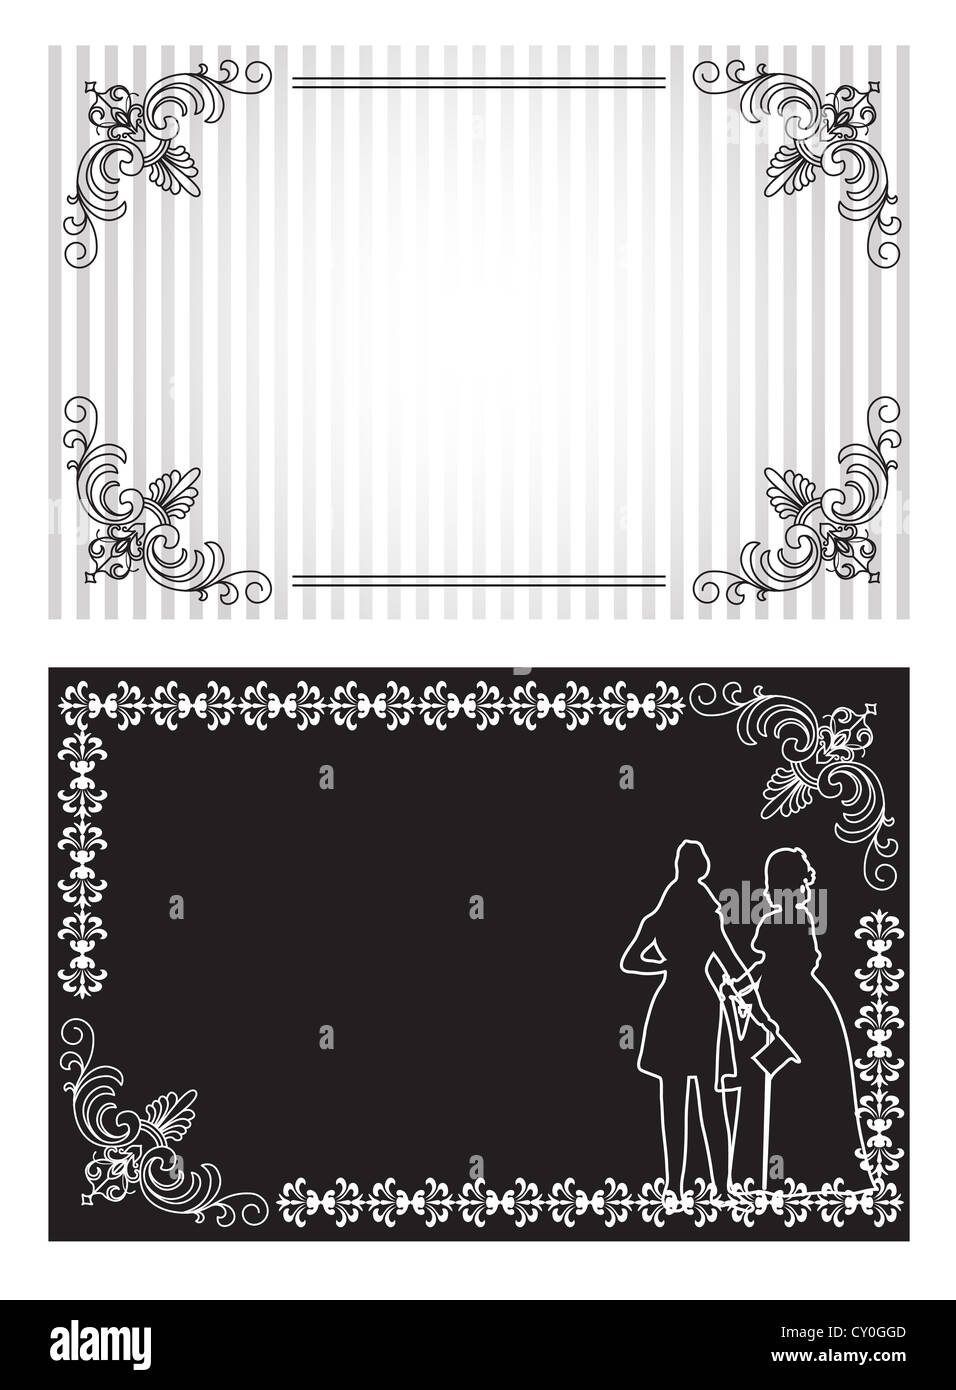 Blanc et noir carte d'invitation avec des silhouettes d'homme et de dame Banque D'Images